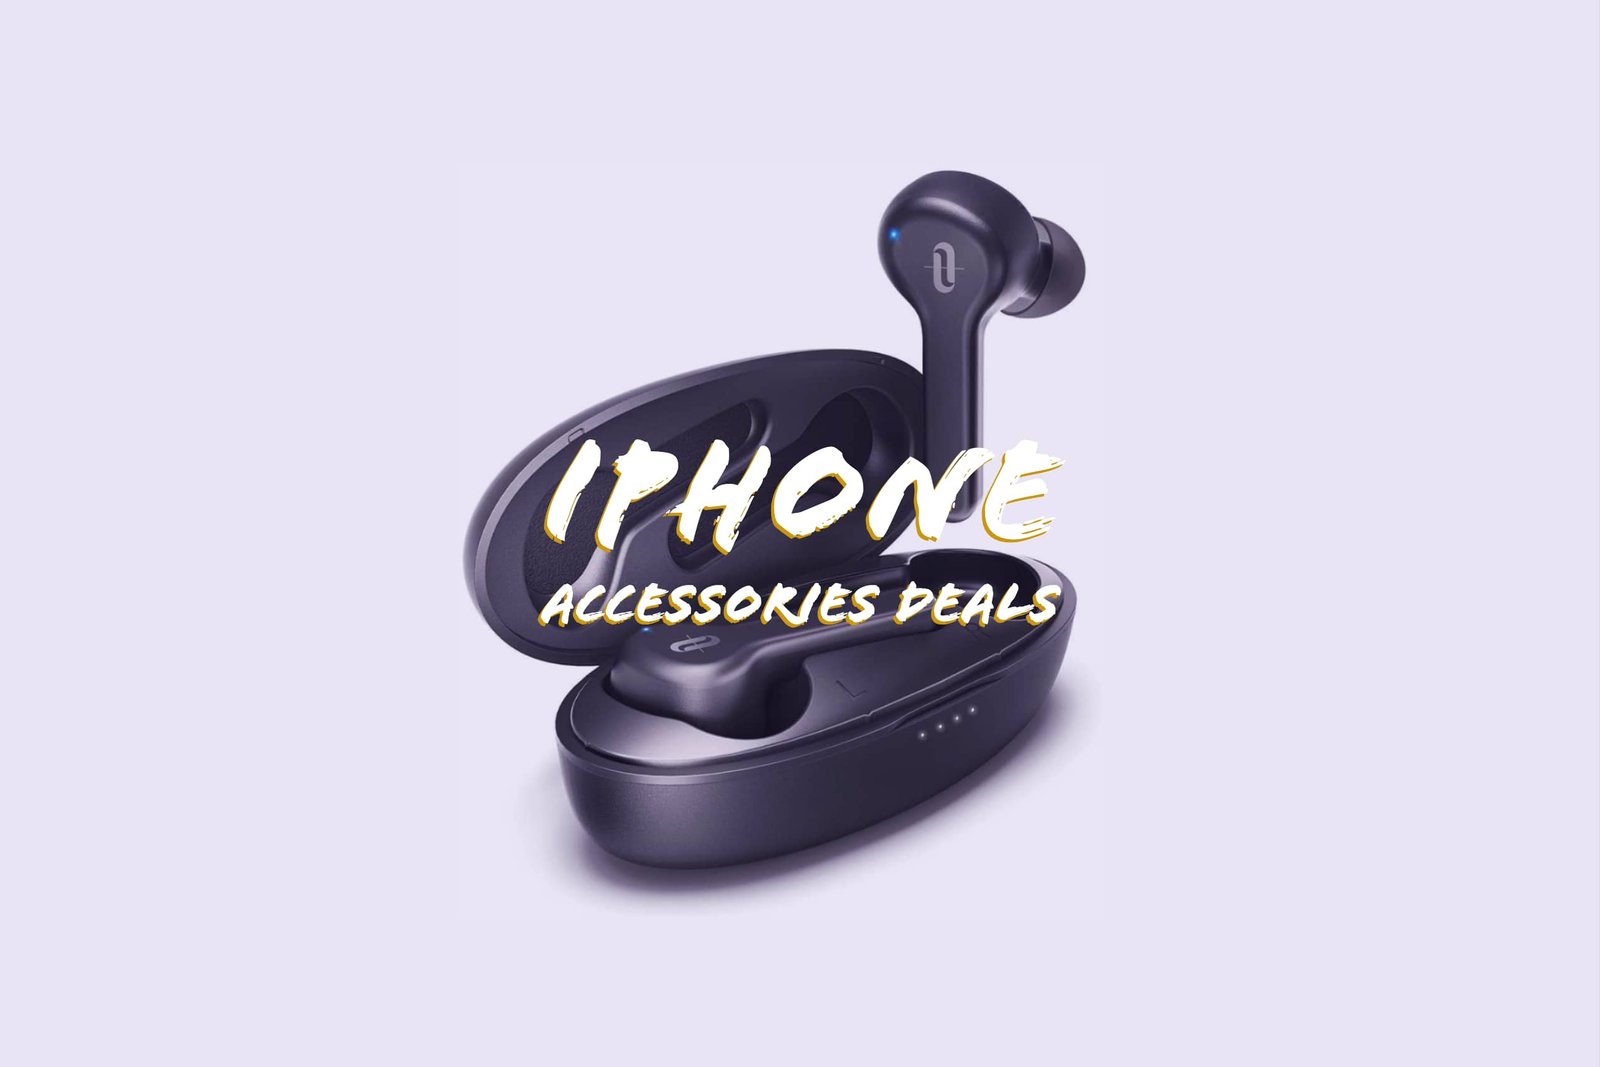 iphone deals accessories